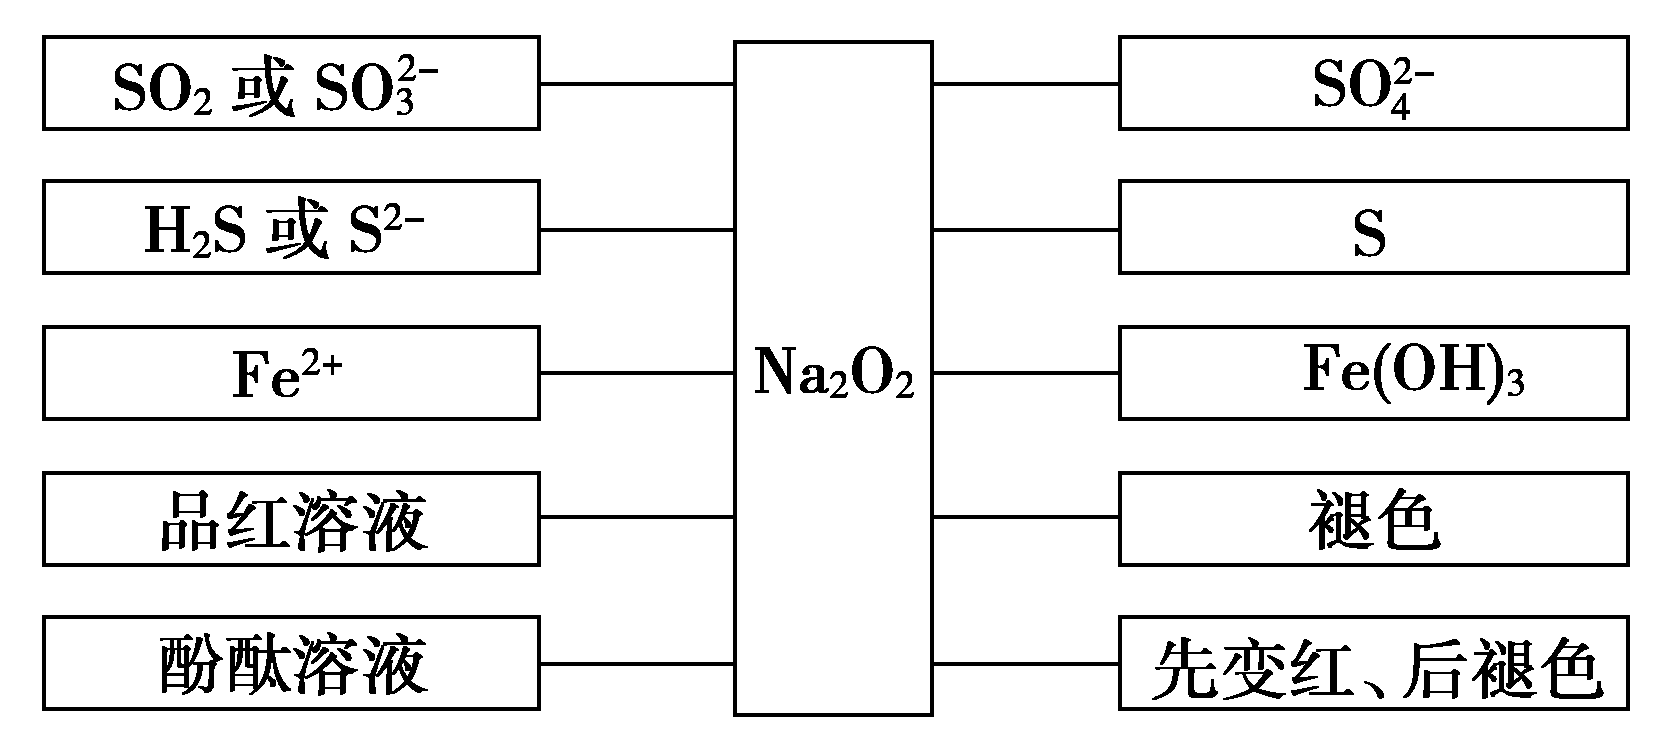 从三个方面充分认识Na2O2的性质